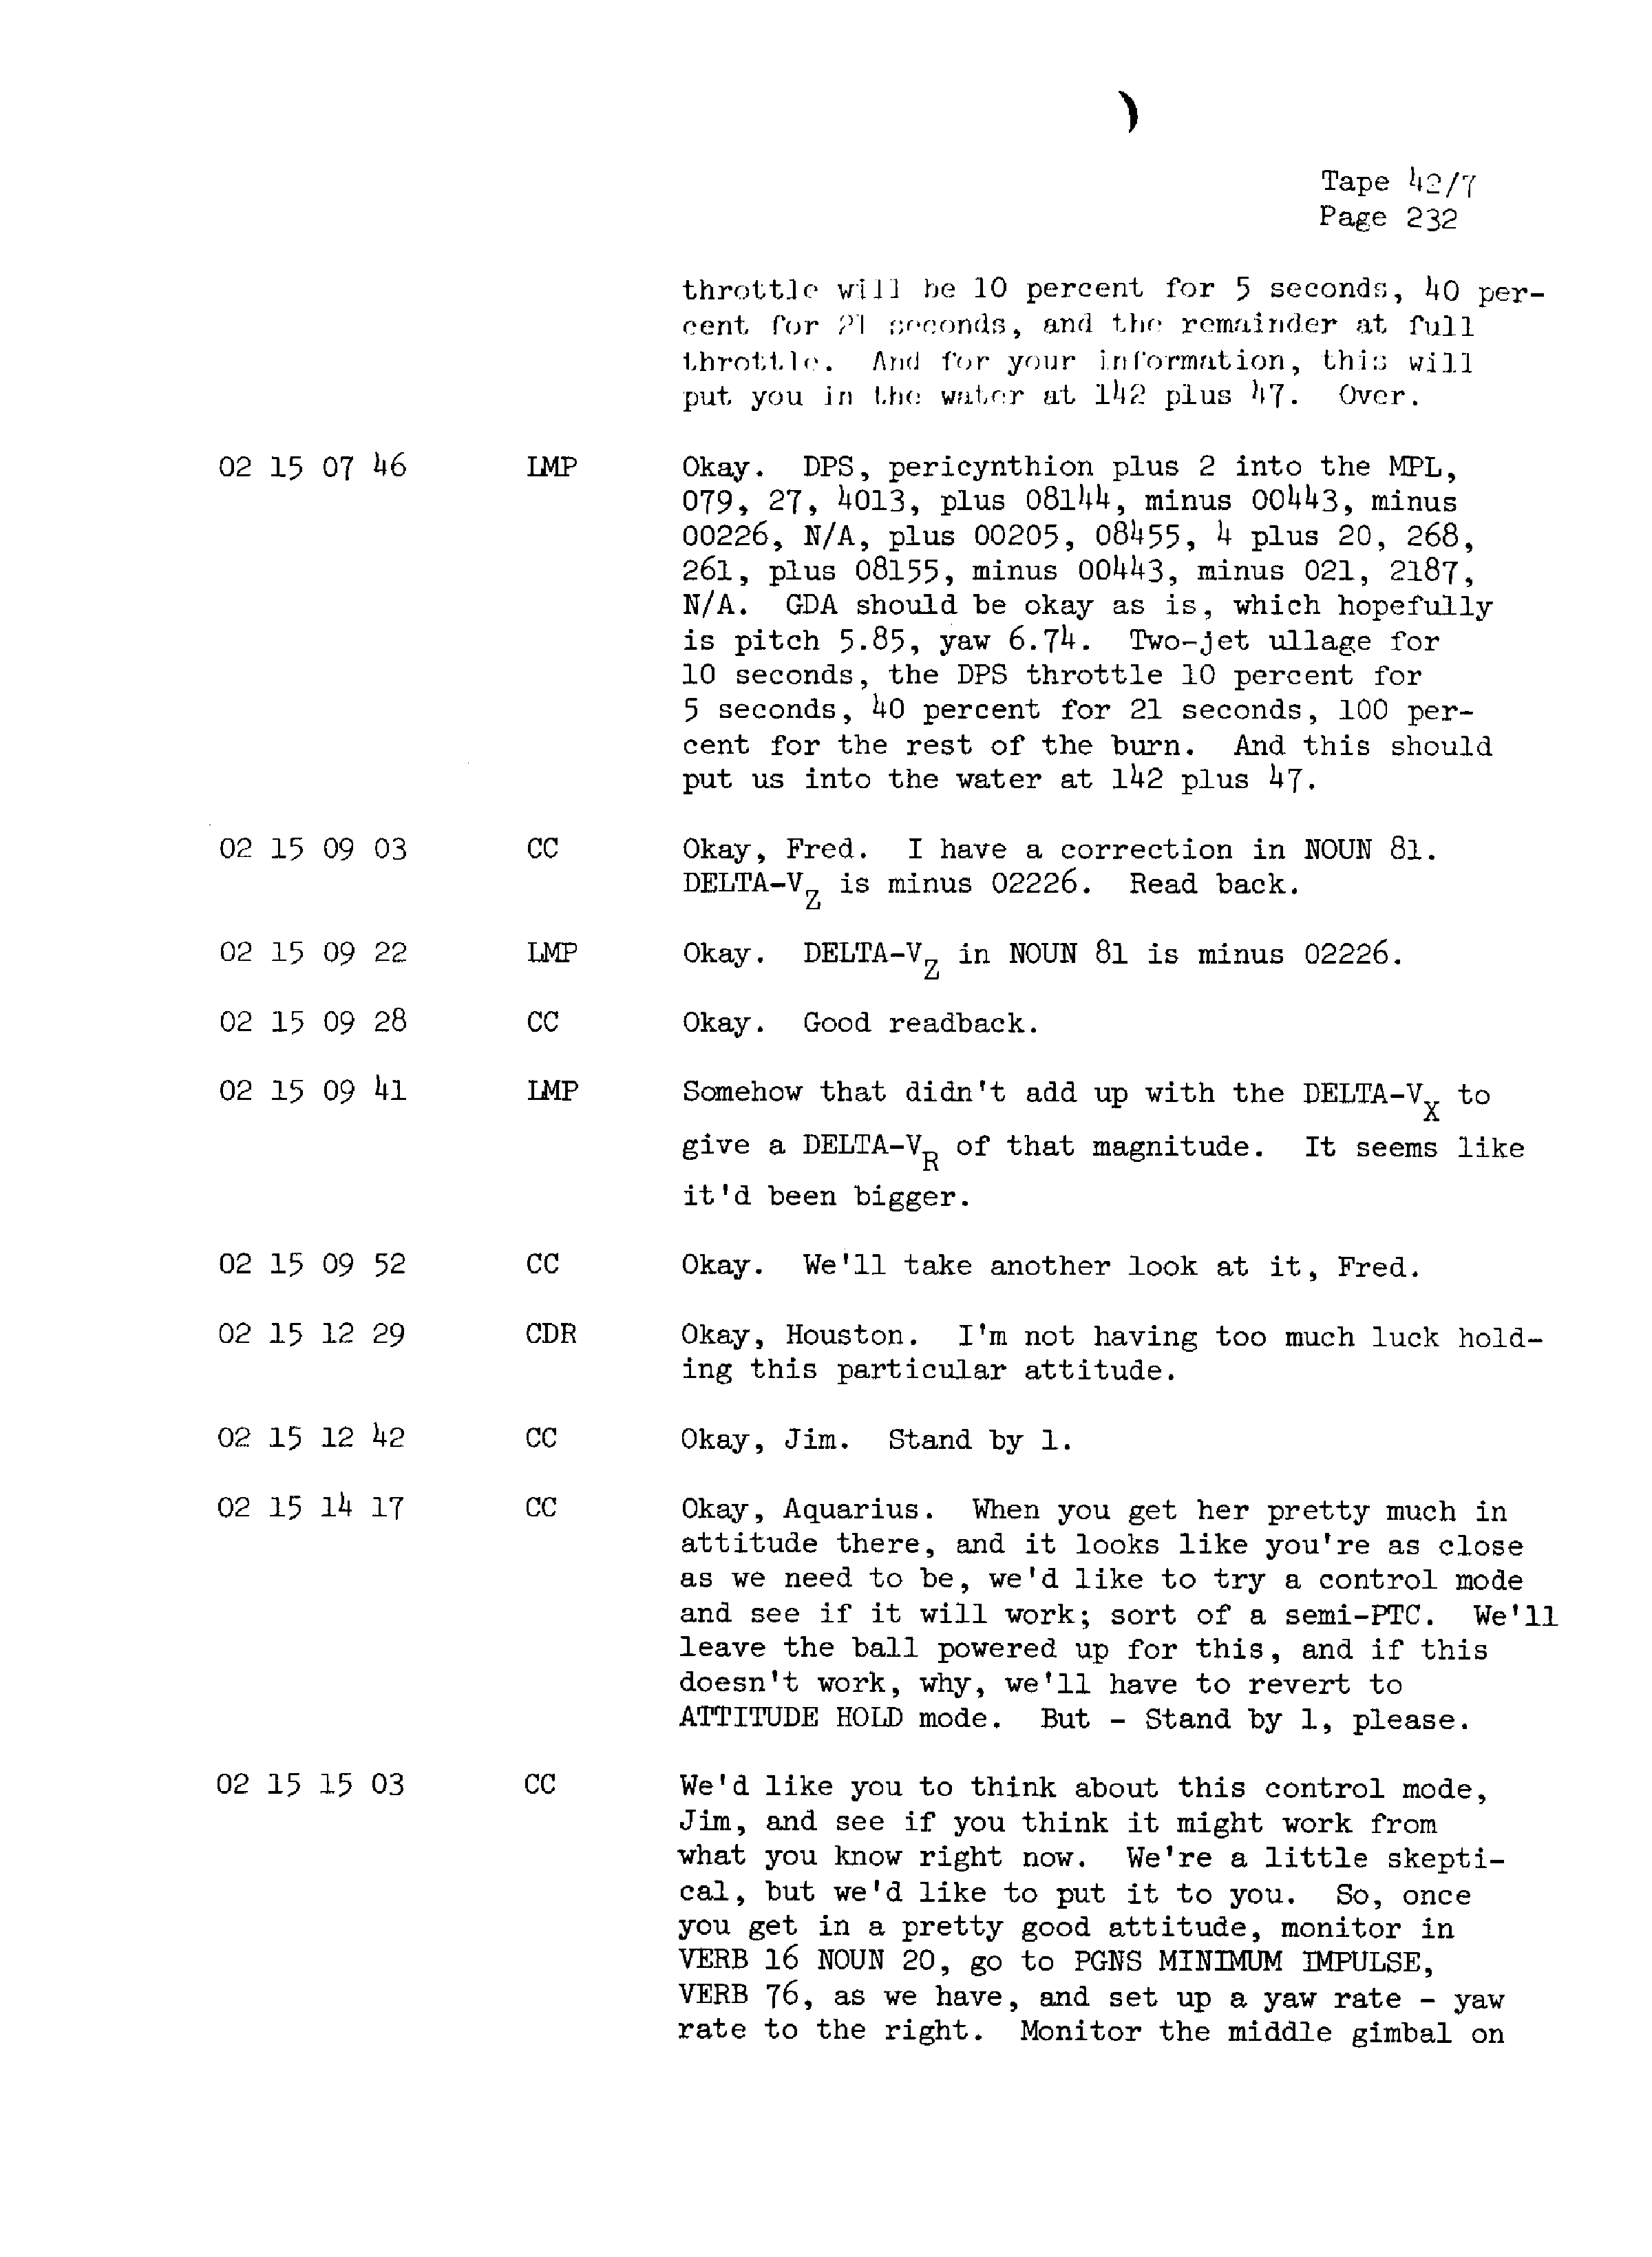 Page 239 of Apollo 13’s original transcript